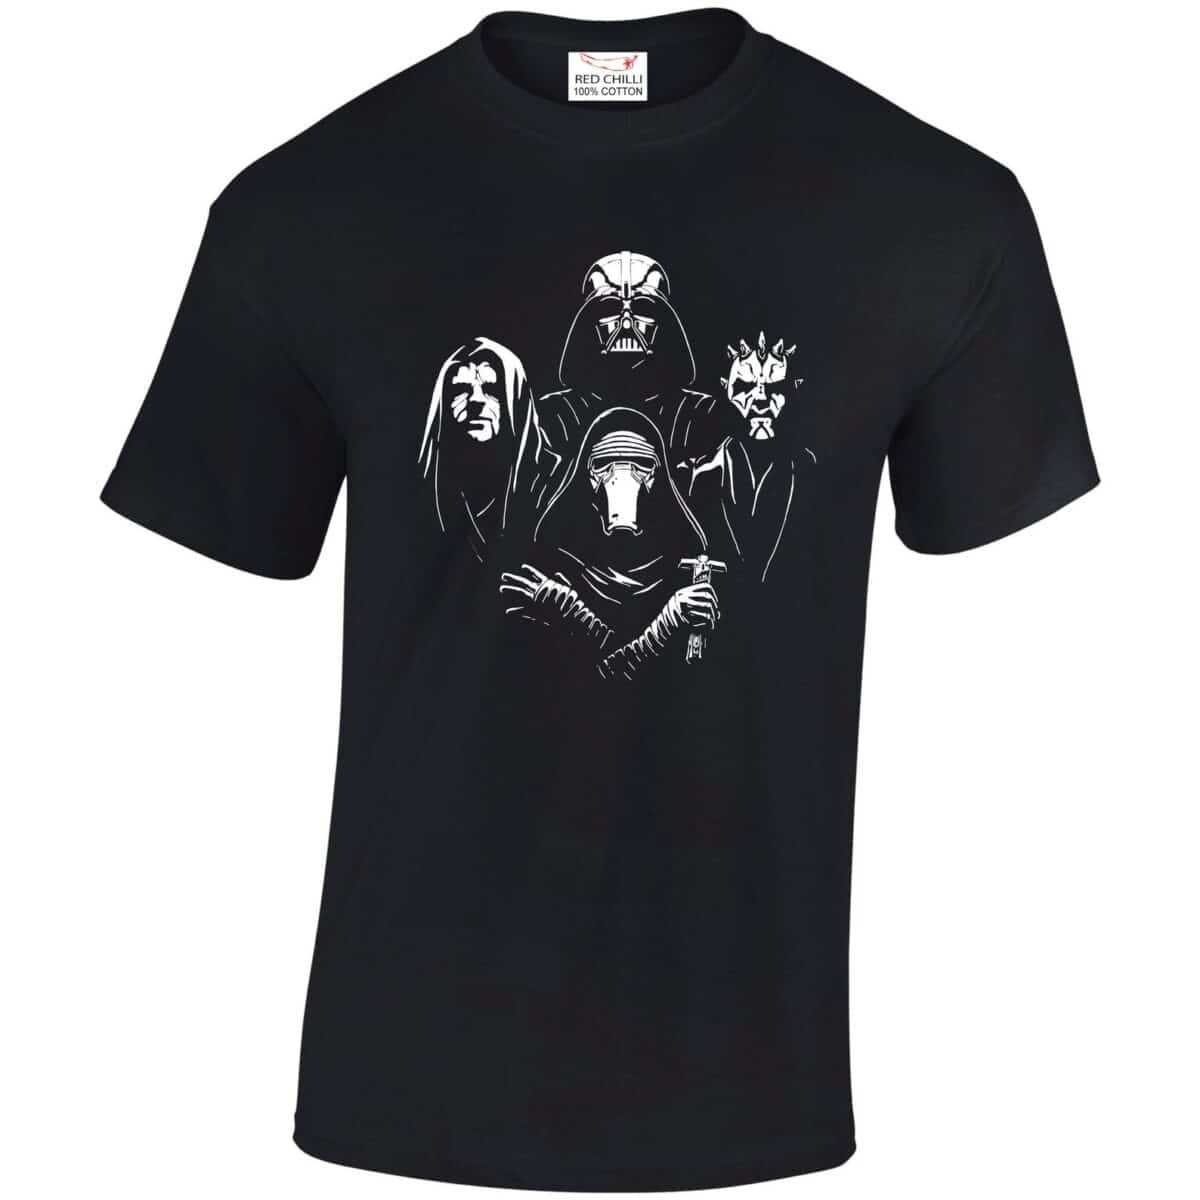 Star Wars dark side Queen style t-shirt